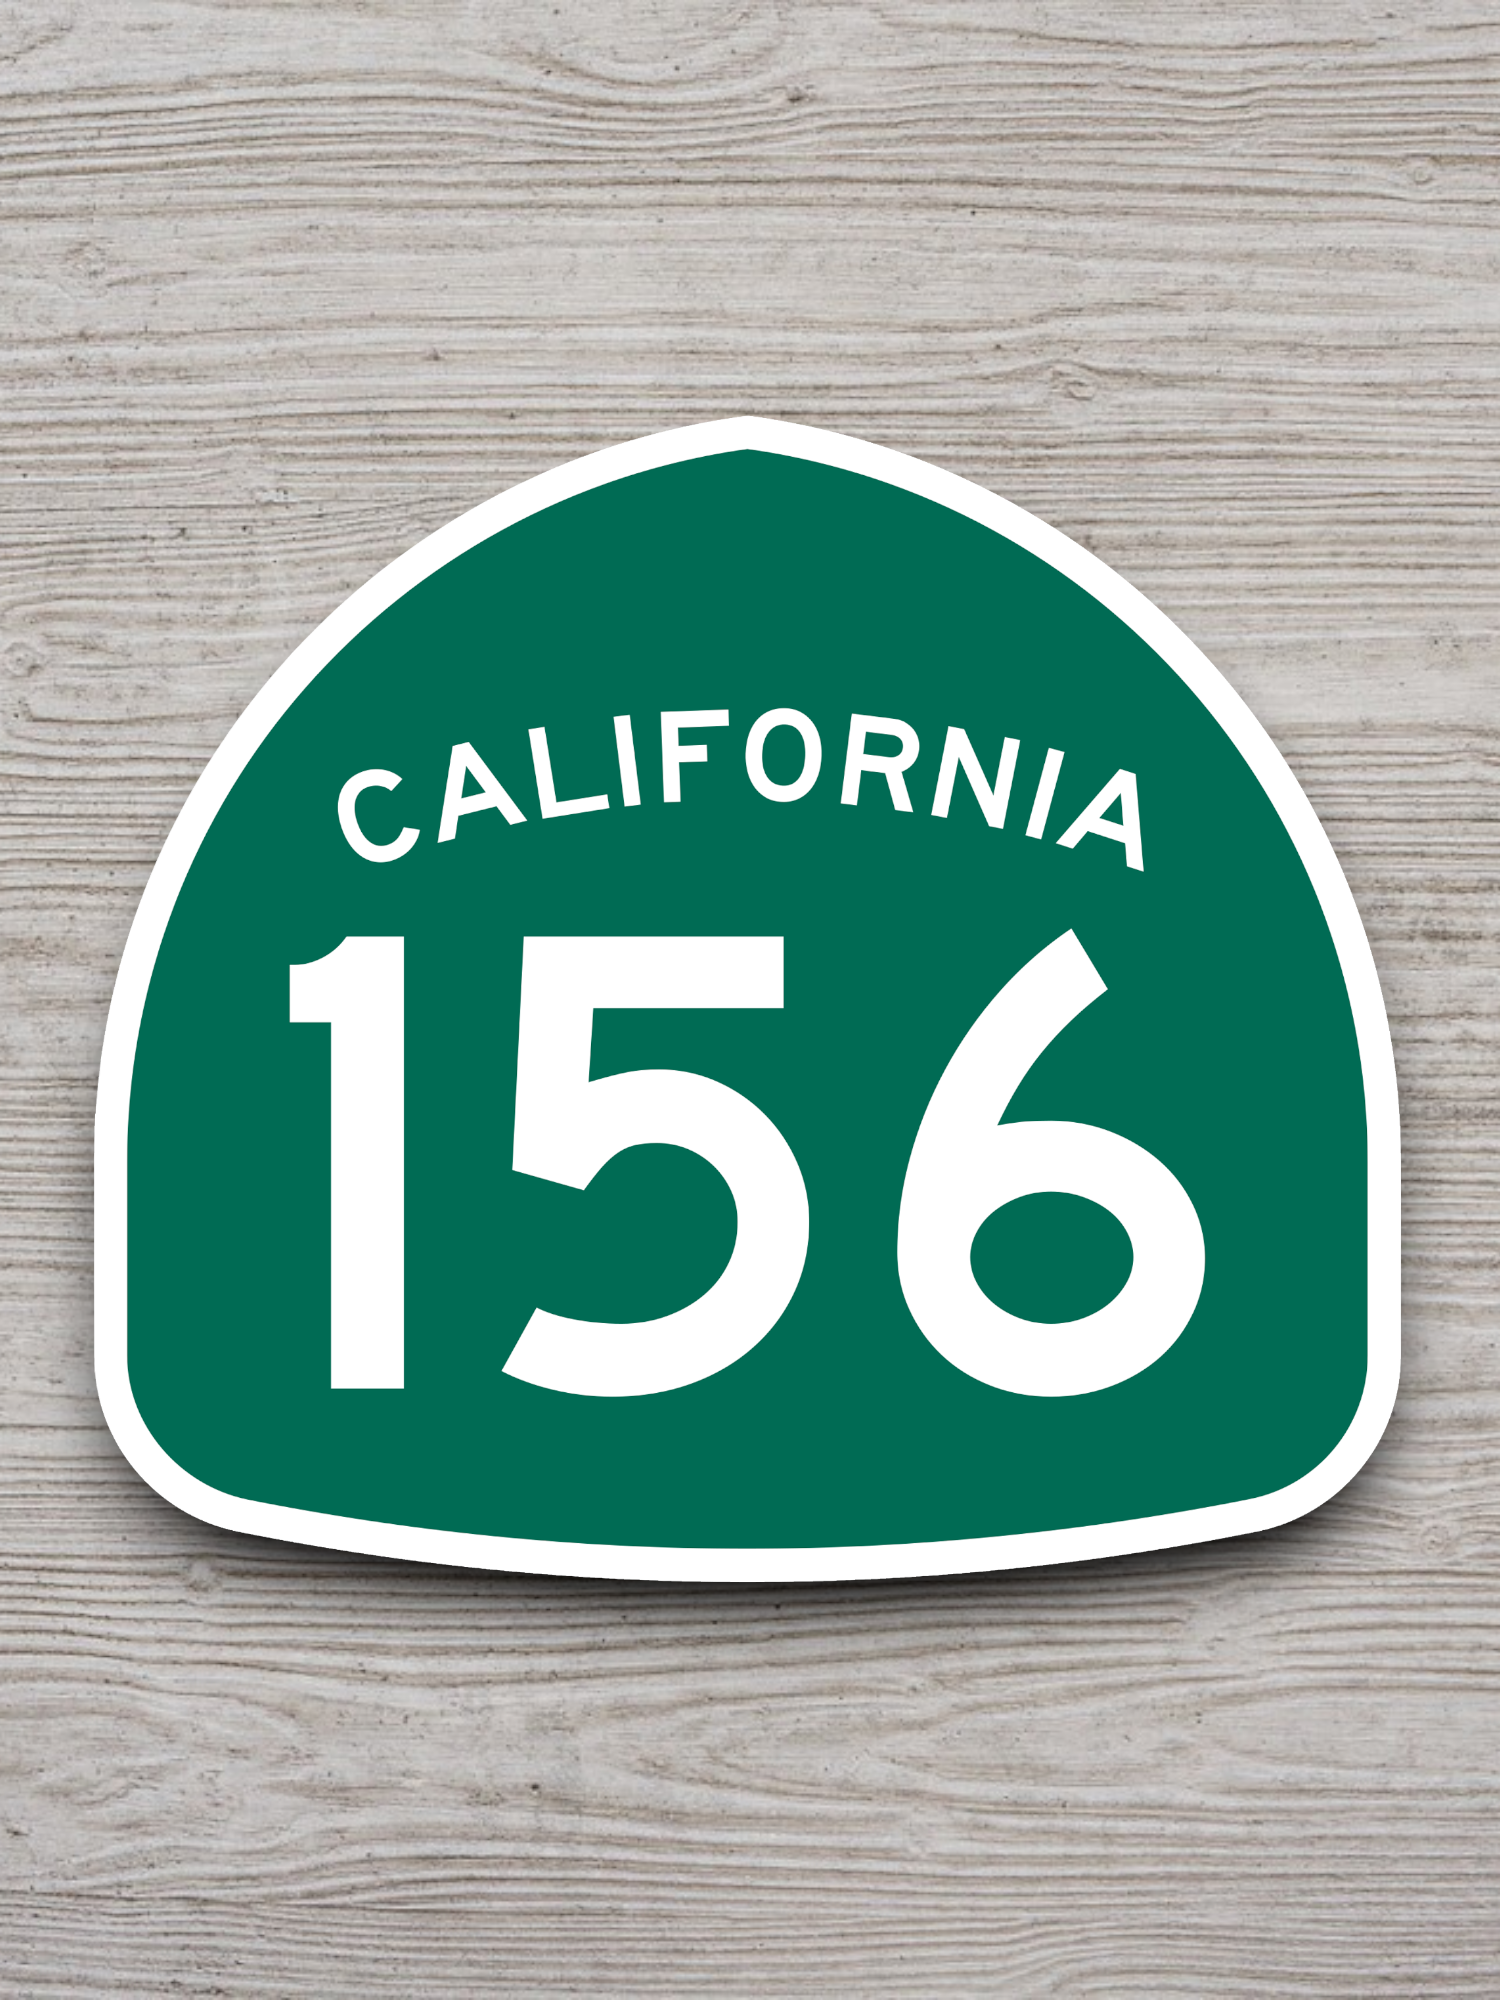 California State Route 156 Sticker